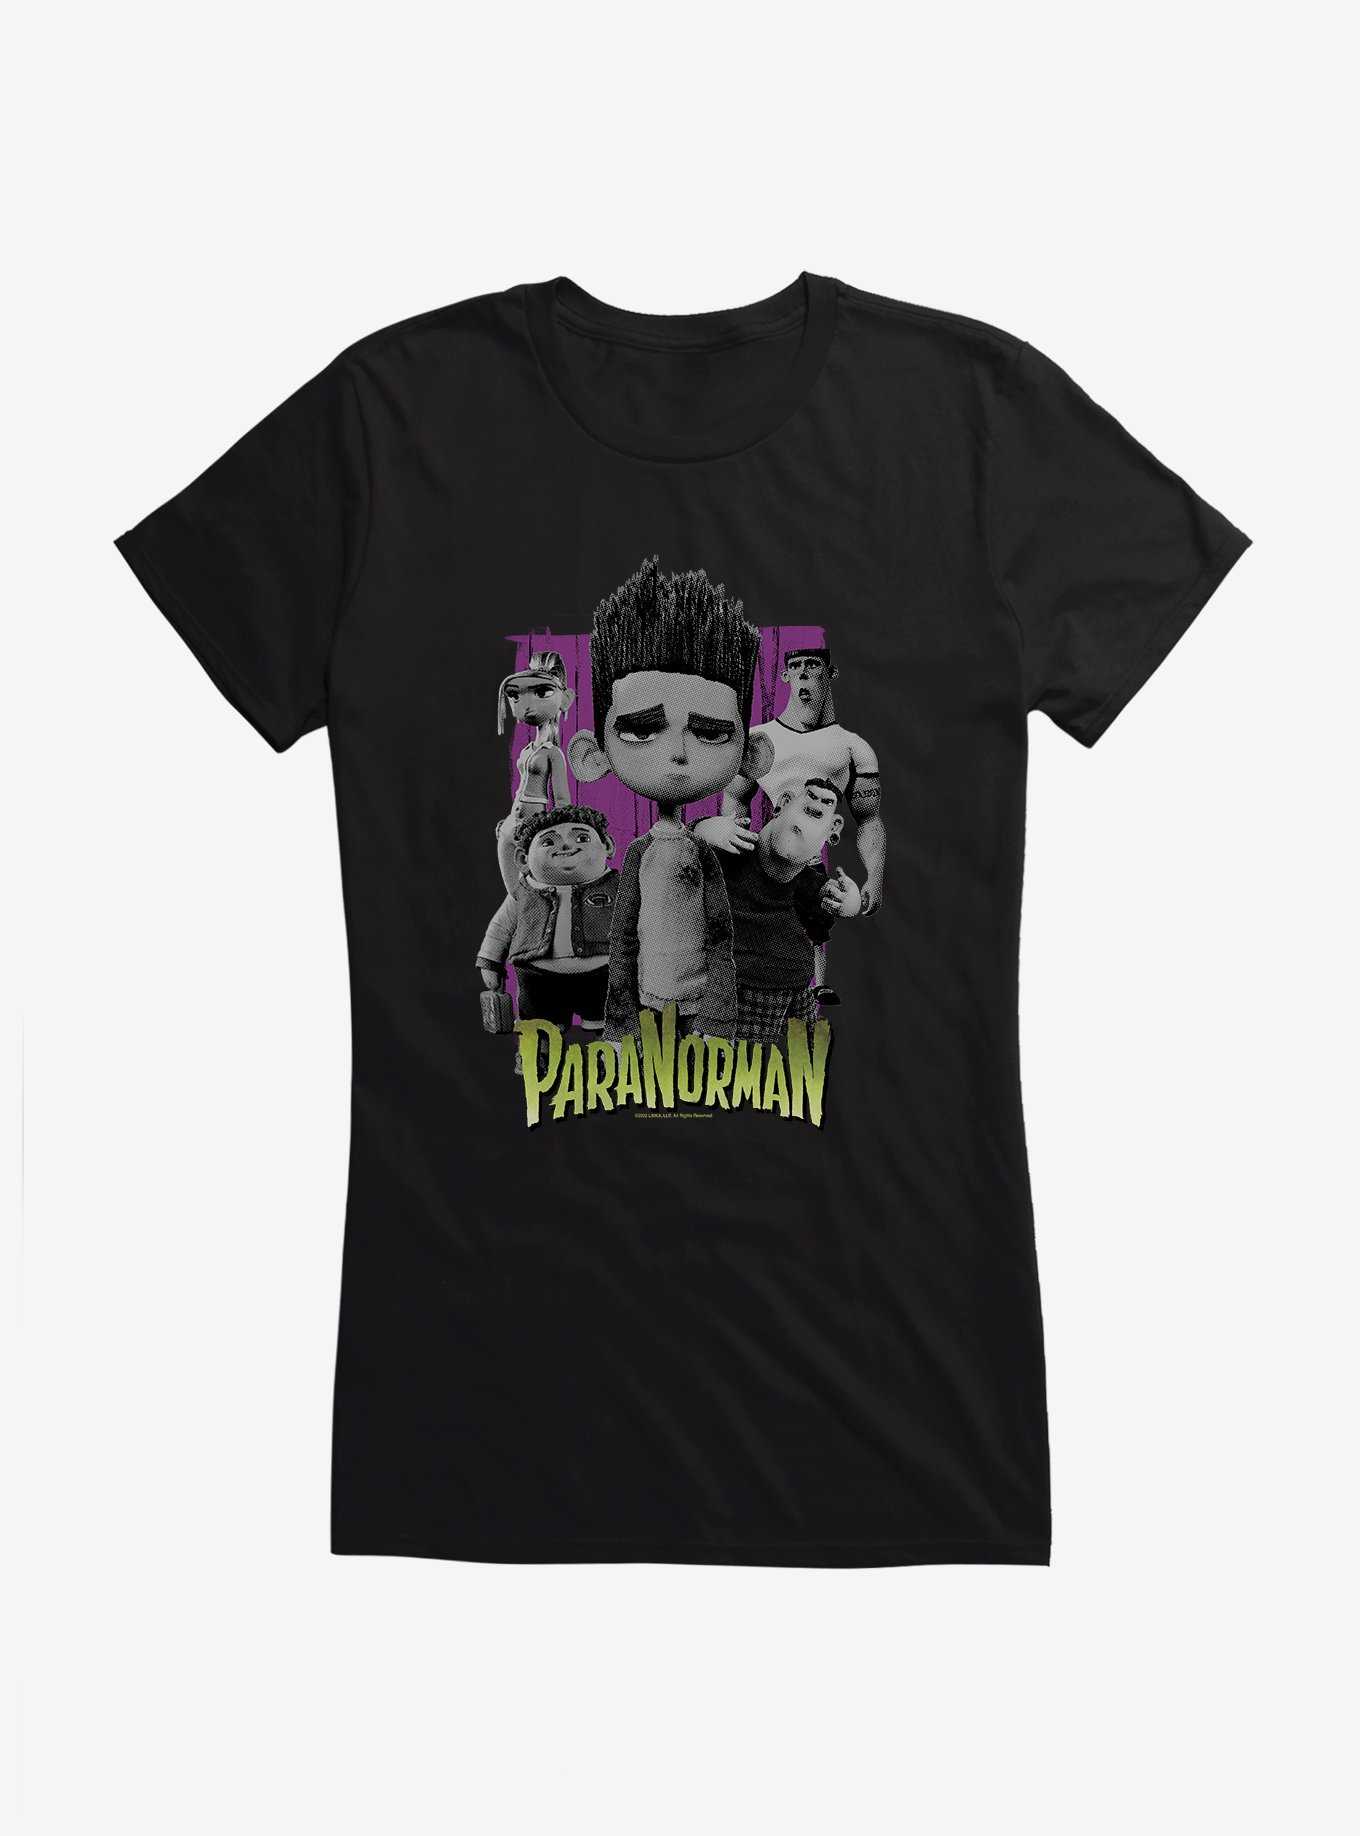 Paranorman Group Portrait Girls T-Shirt, , hi-res